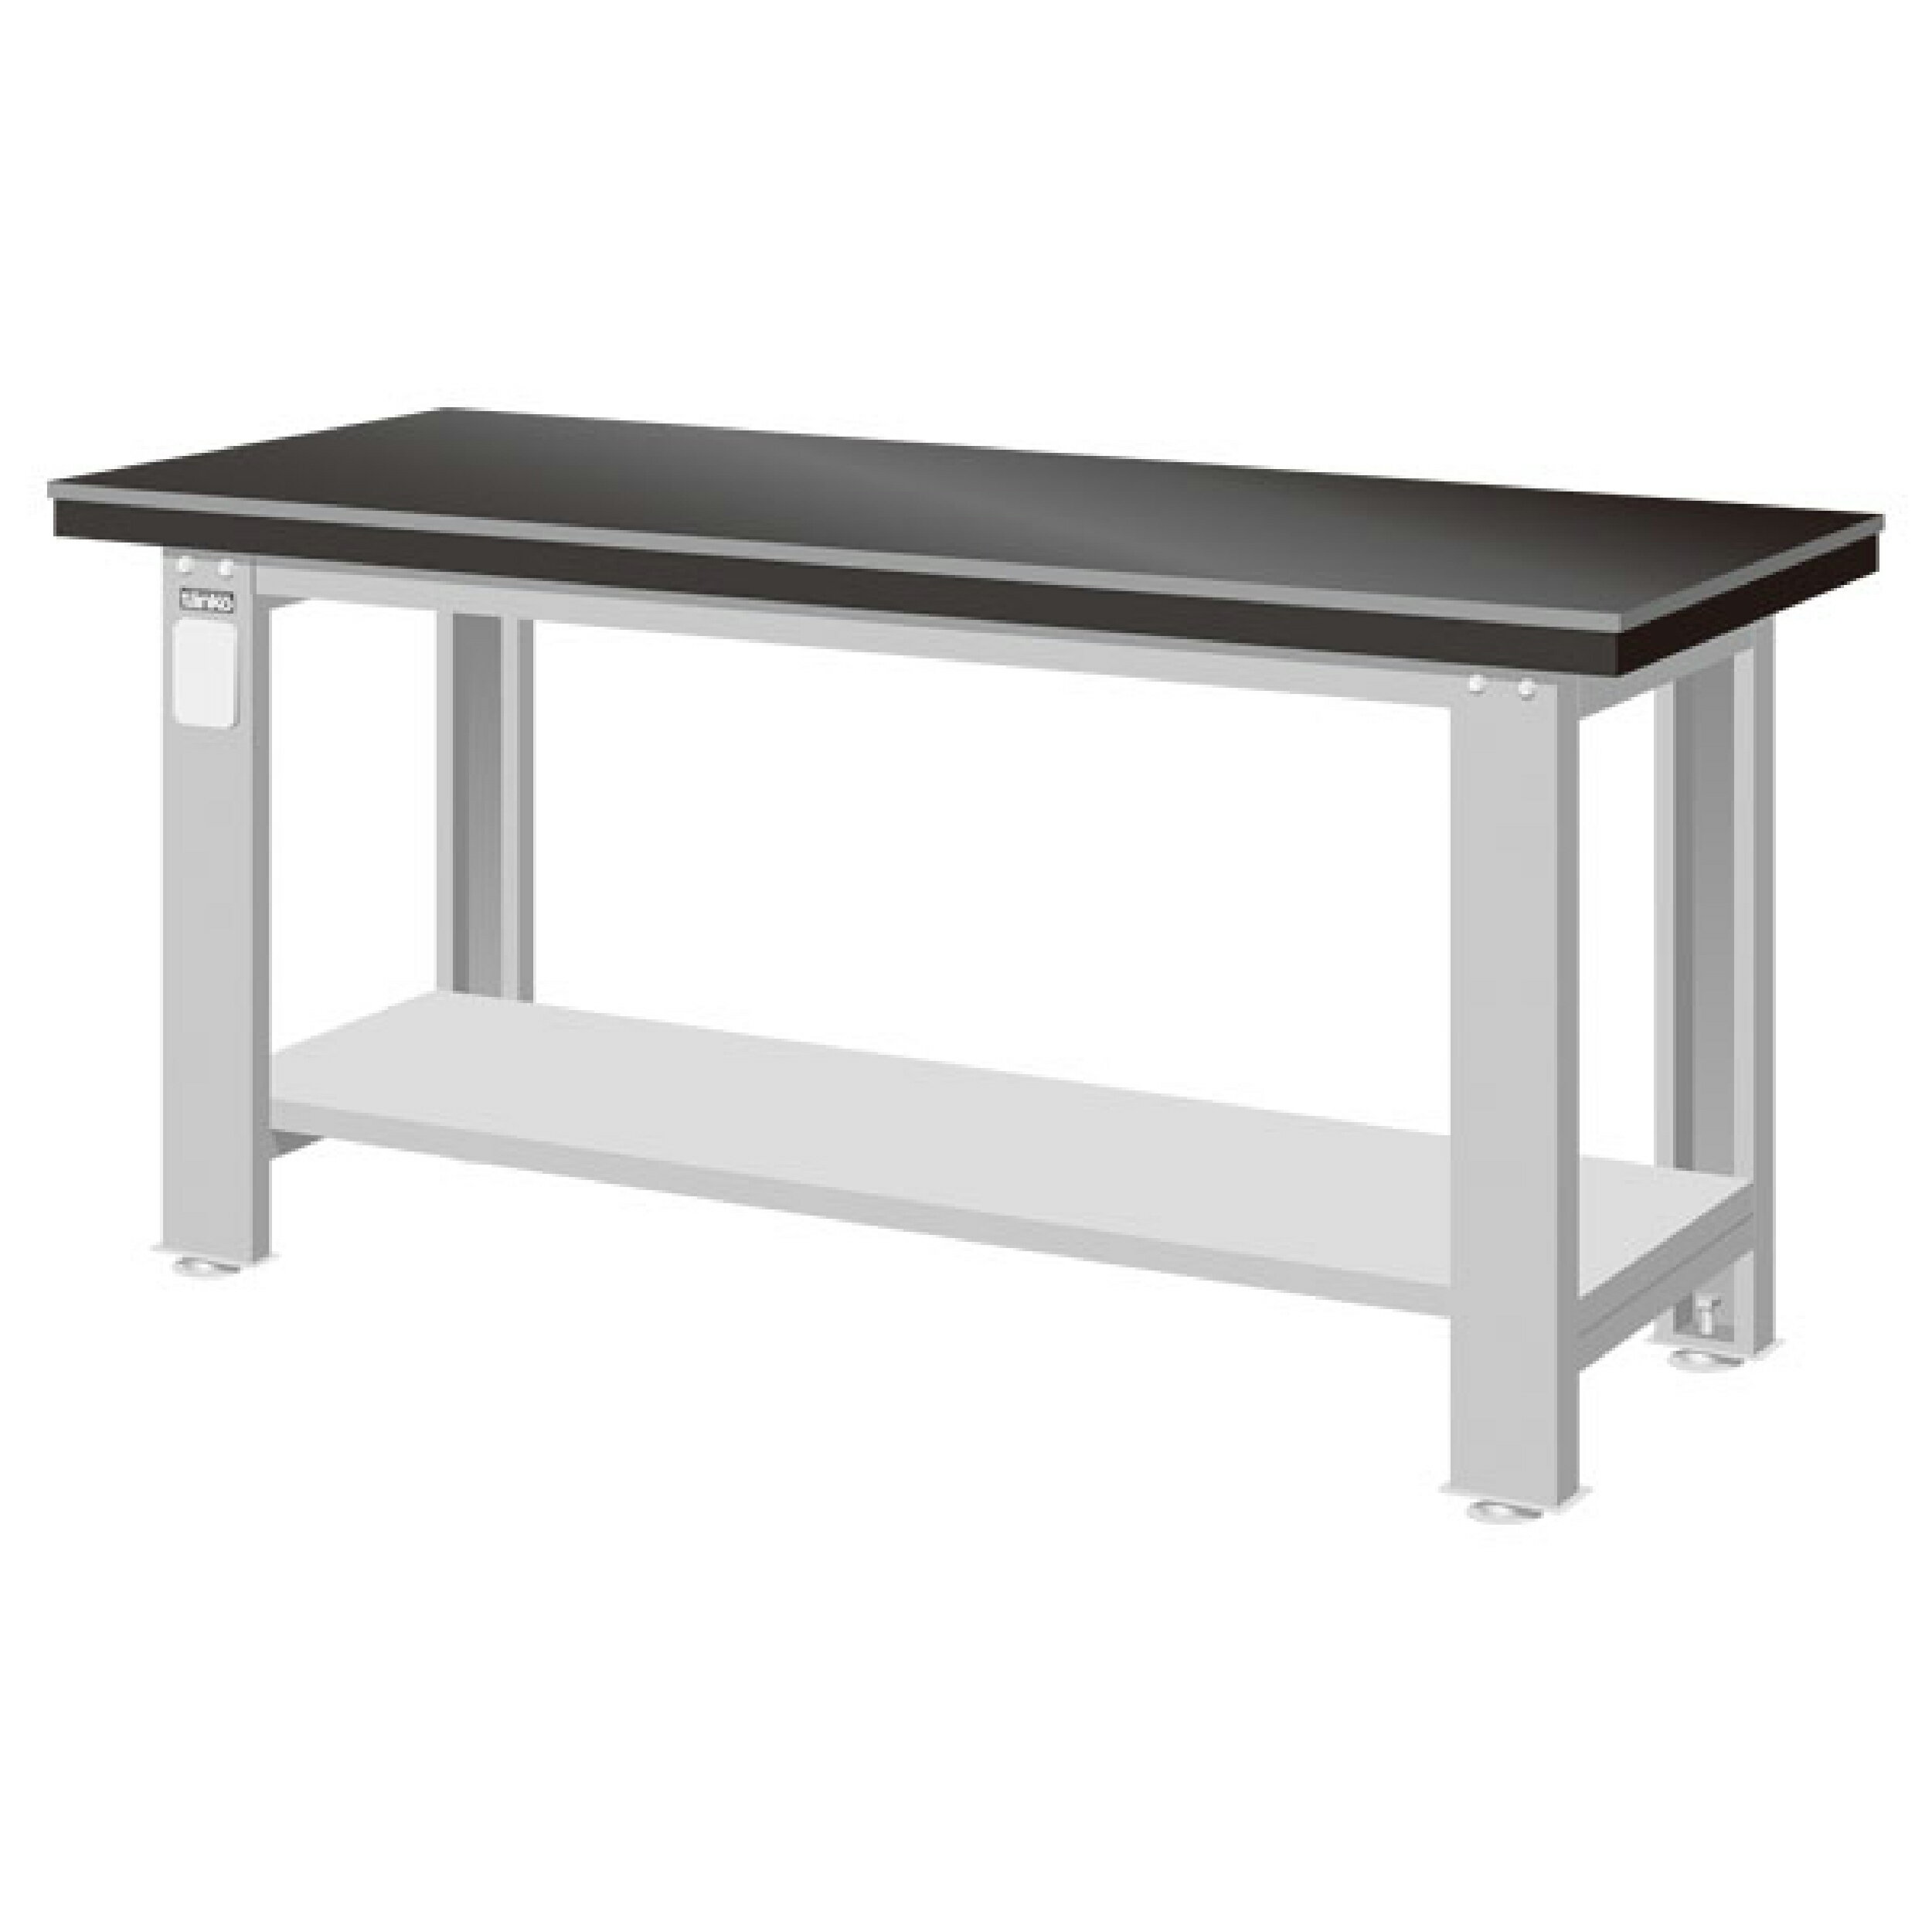 TANKO 重量型工作桌 鉗工桌 WA-57A (一般型)